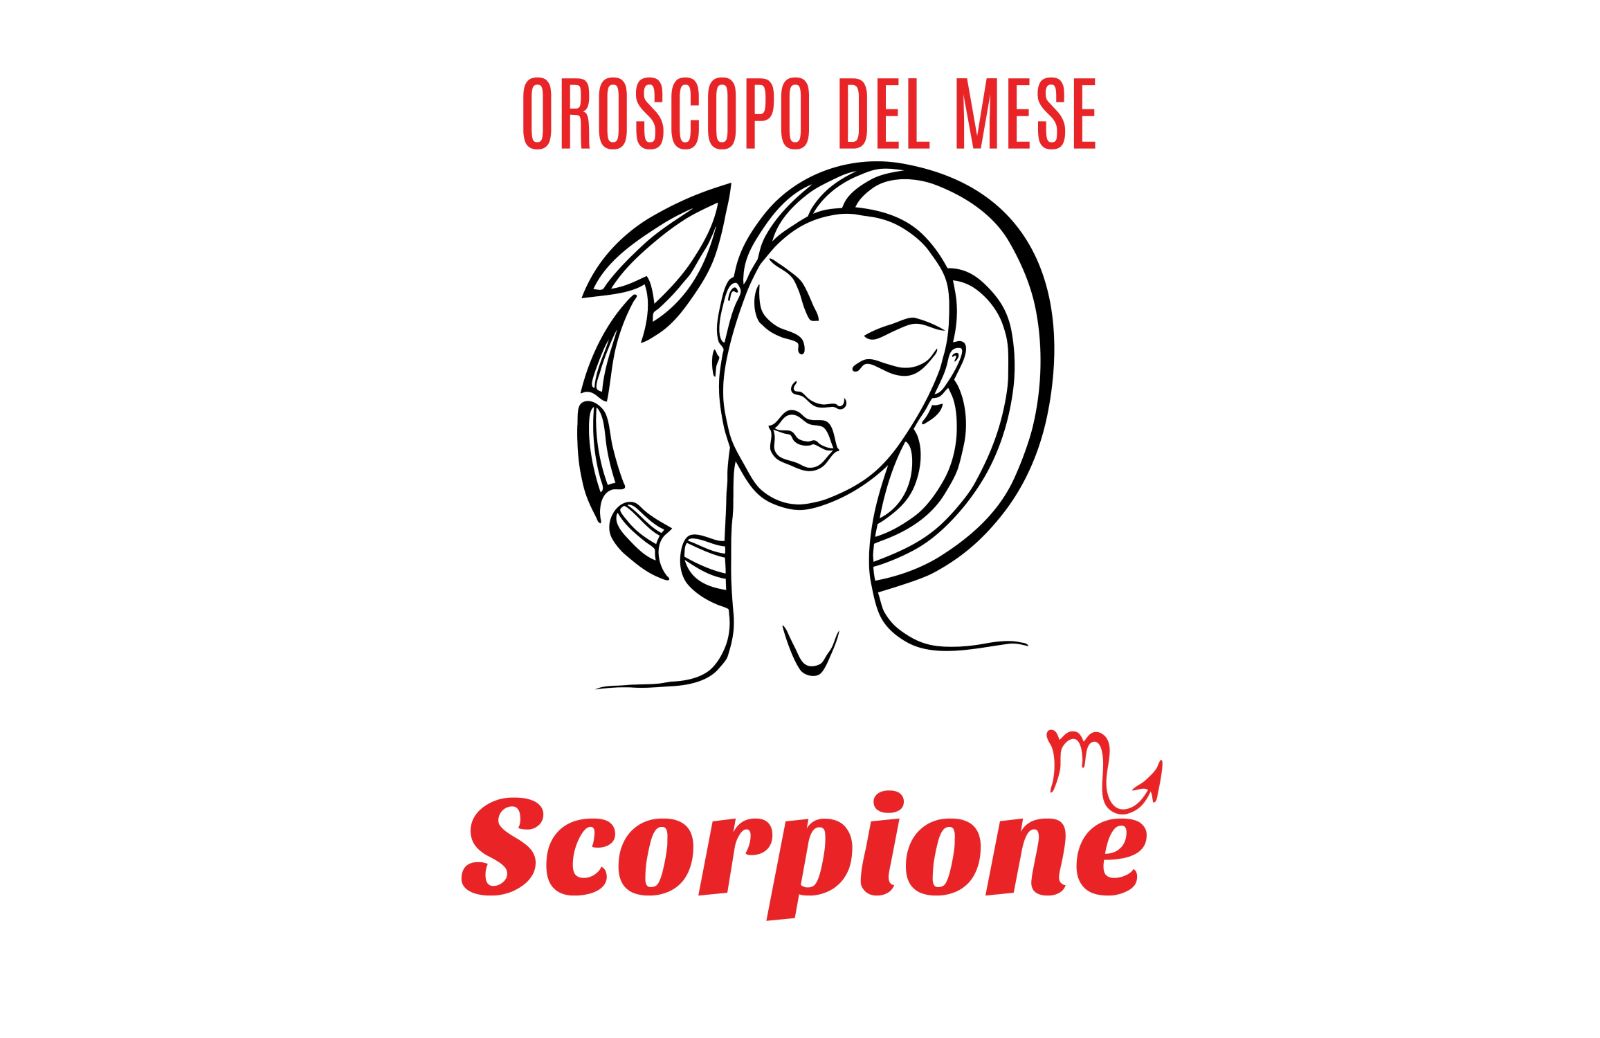 Oroscopo del mese: Scorpione - agosto 2018